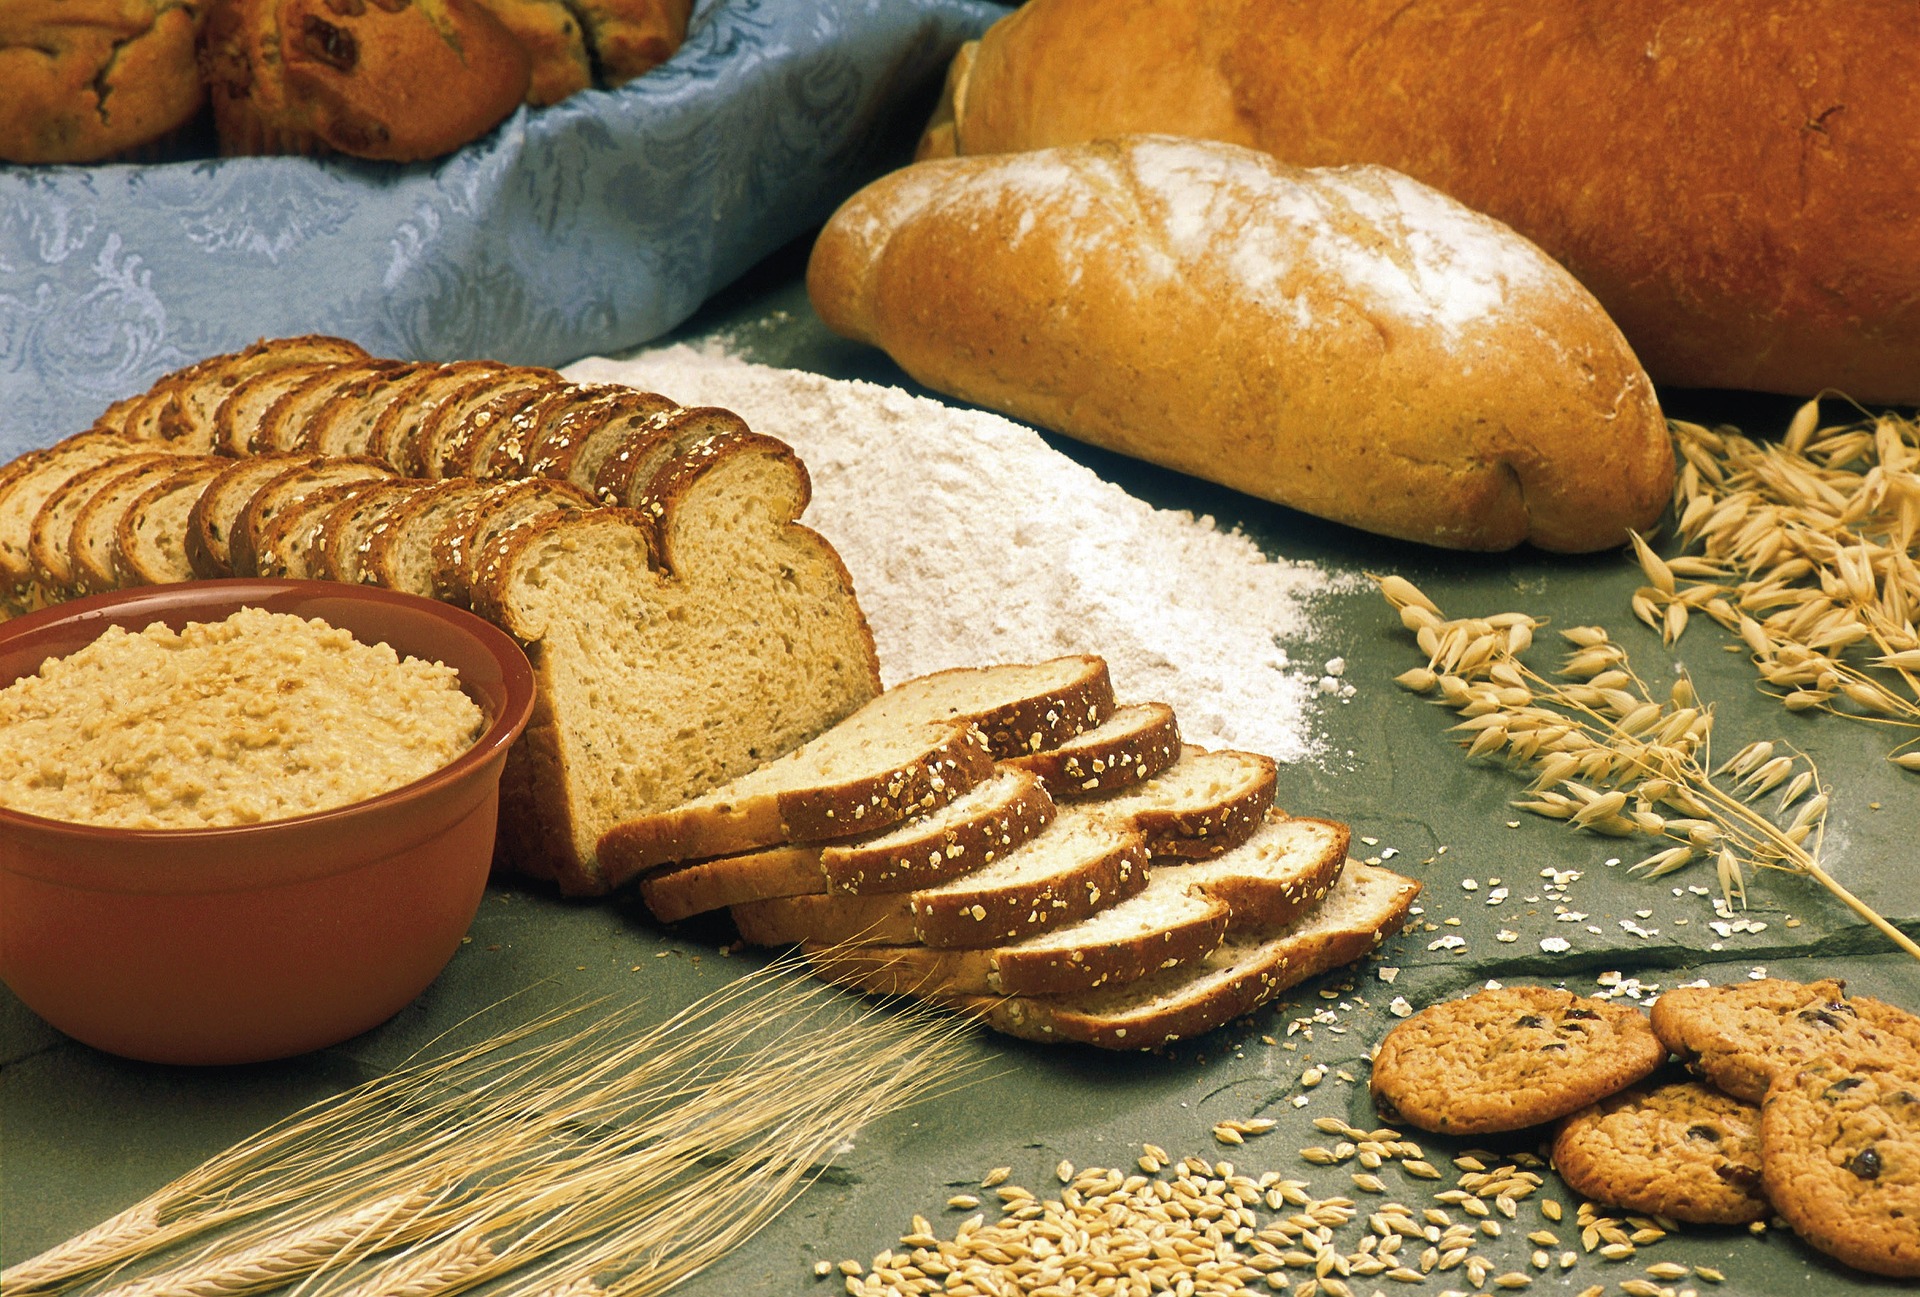 14 Kreasi Roti Gandum untuk Sarapan, Menu Sehat dan Praktis Dibuat!